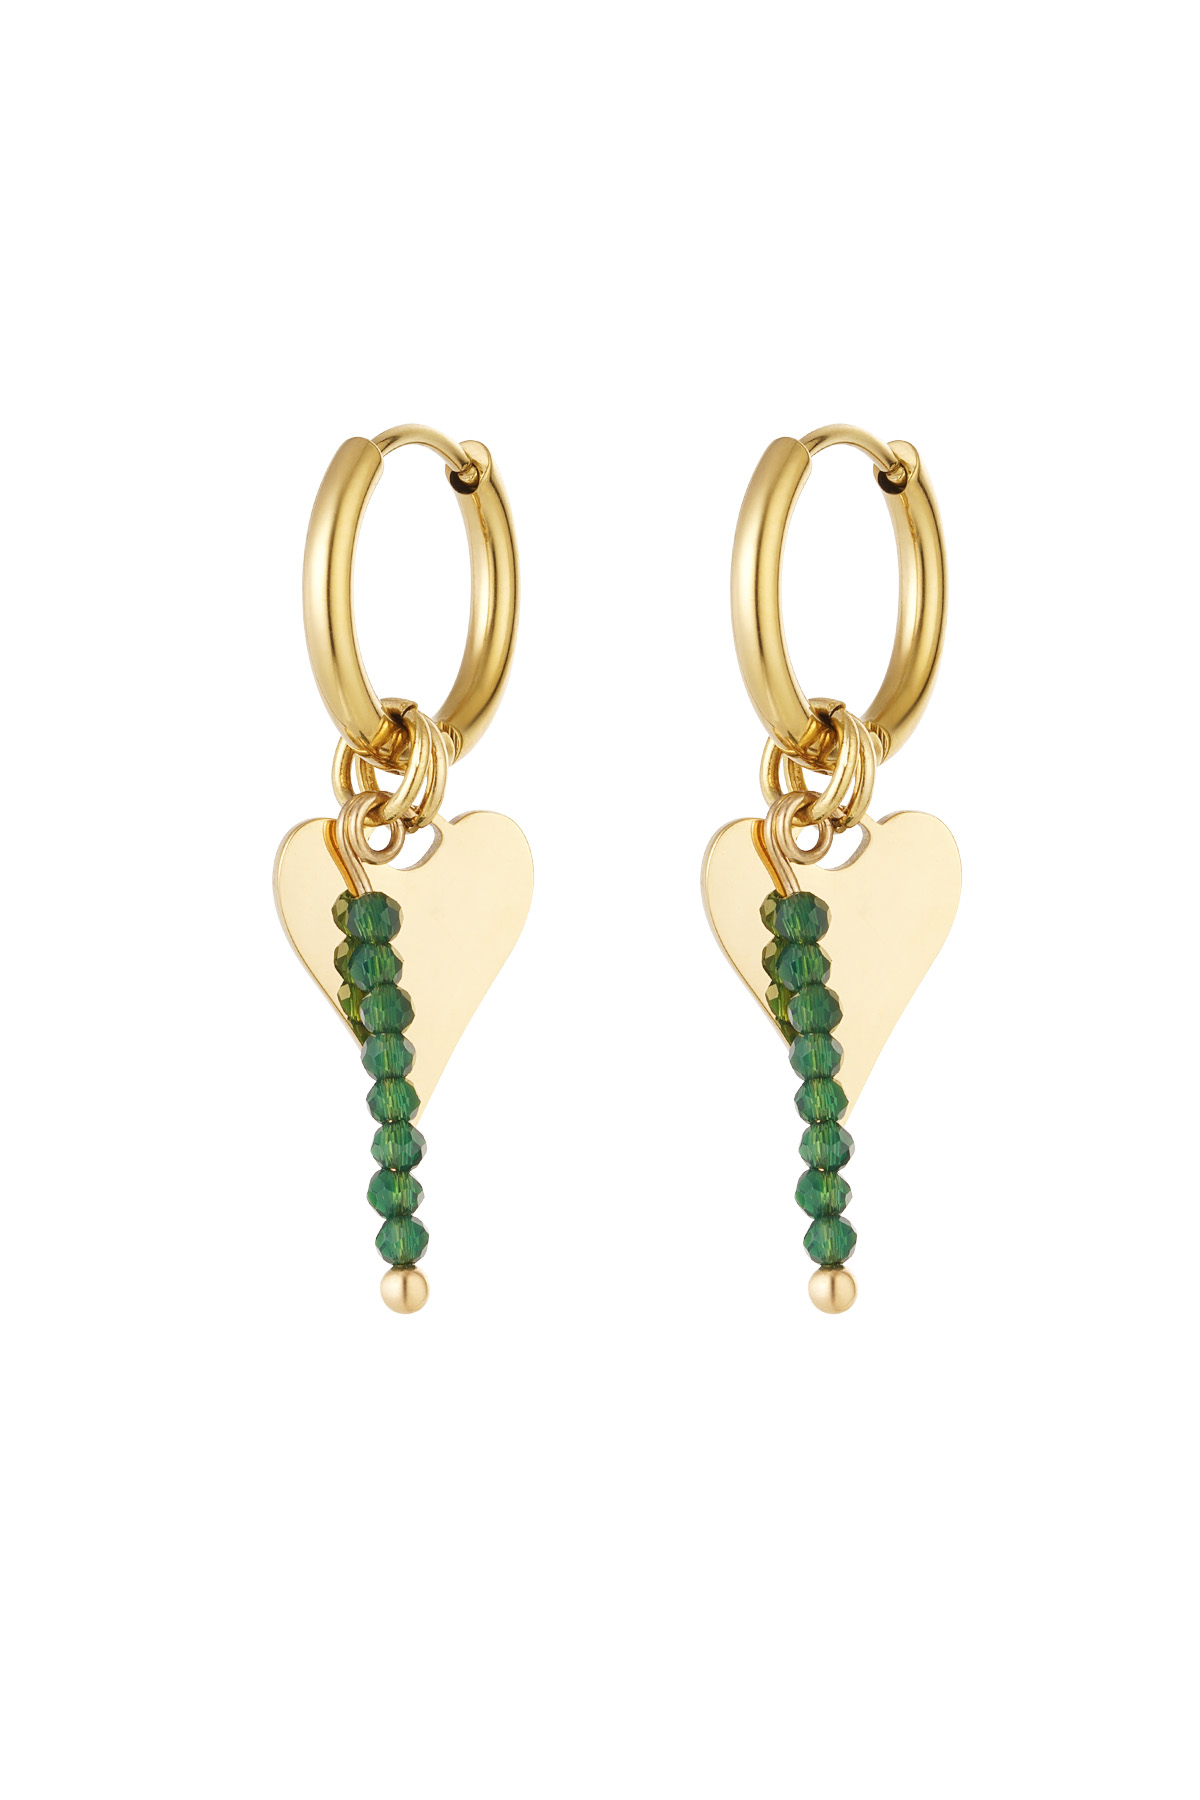 Ohrringe Herz mit Perlen - Gold/Grün